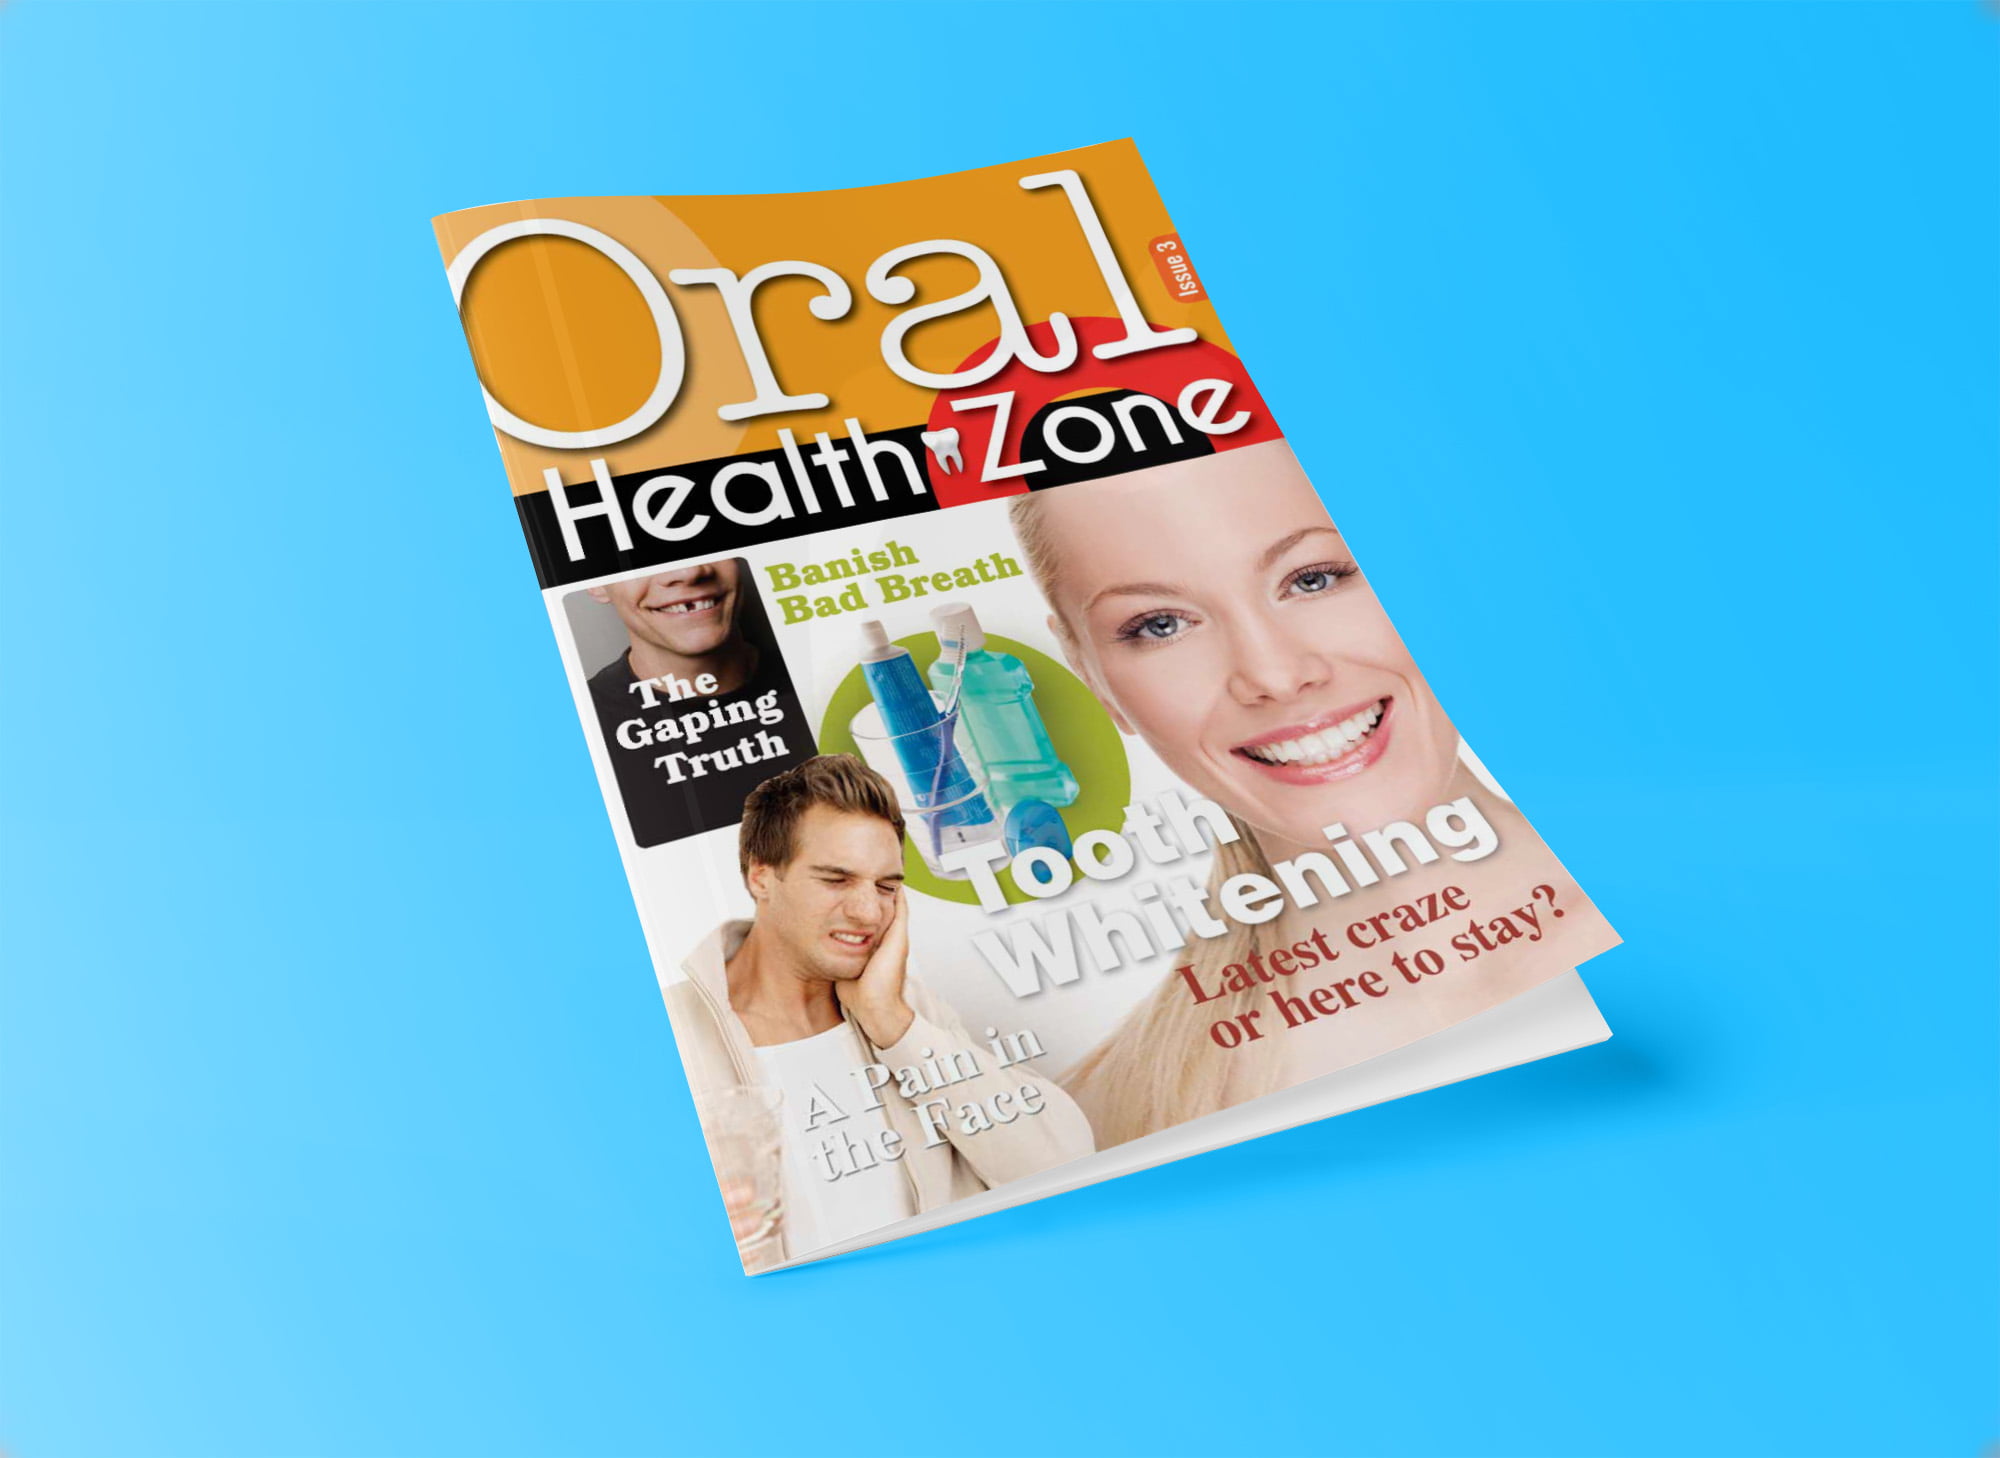 oral health zone brochure 2